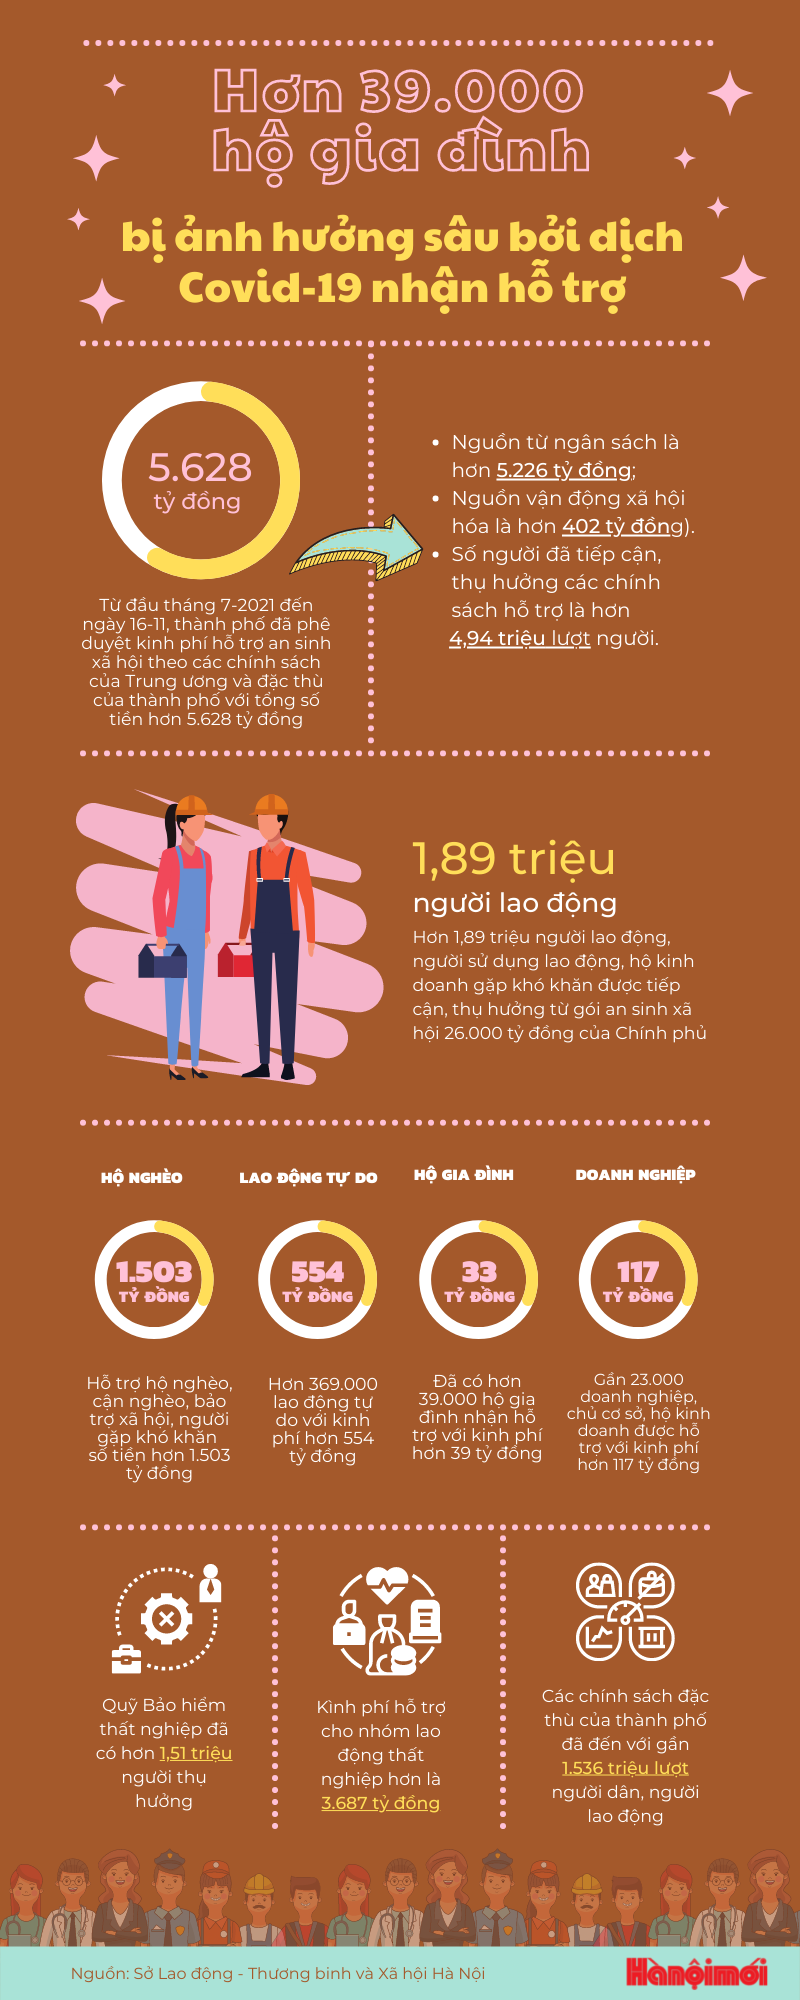 TP. Hà Nội: Hơn 39.000 hộ gia đình ảnh hưởng bởi dịch COVID-19 được nhận hỗ trợ - Ảnh 1